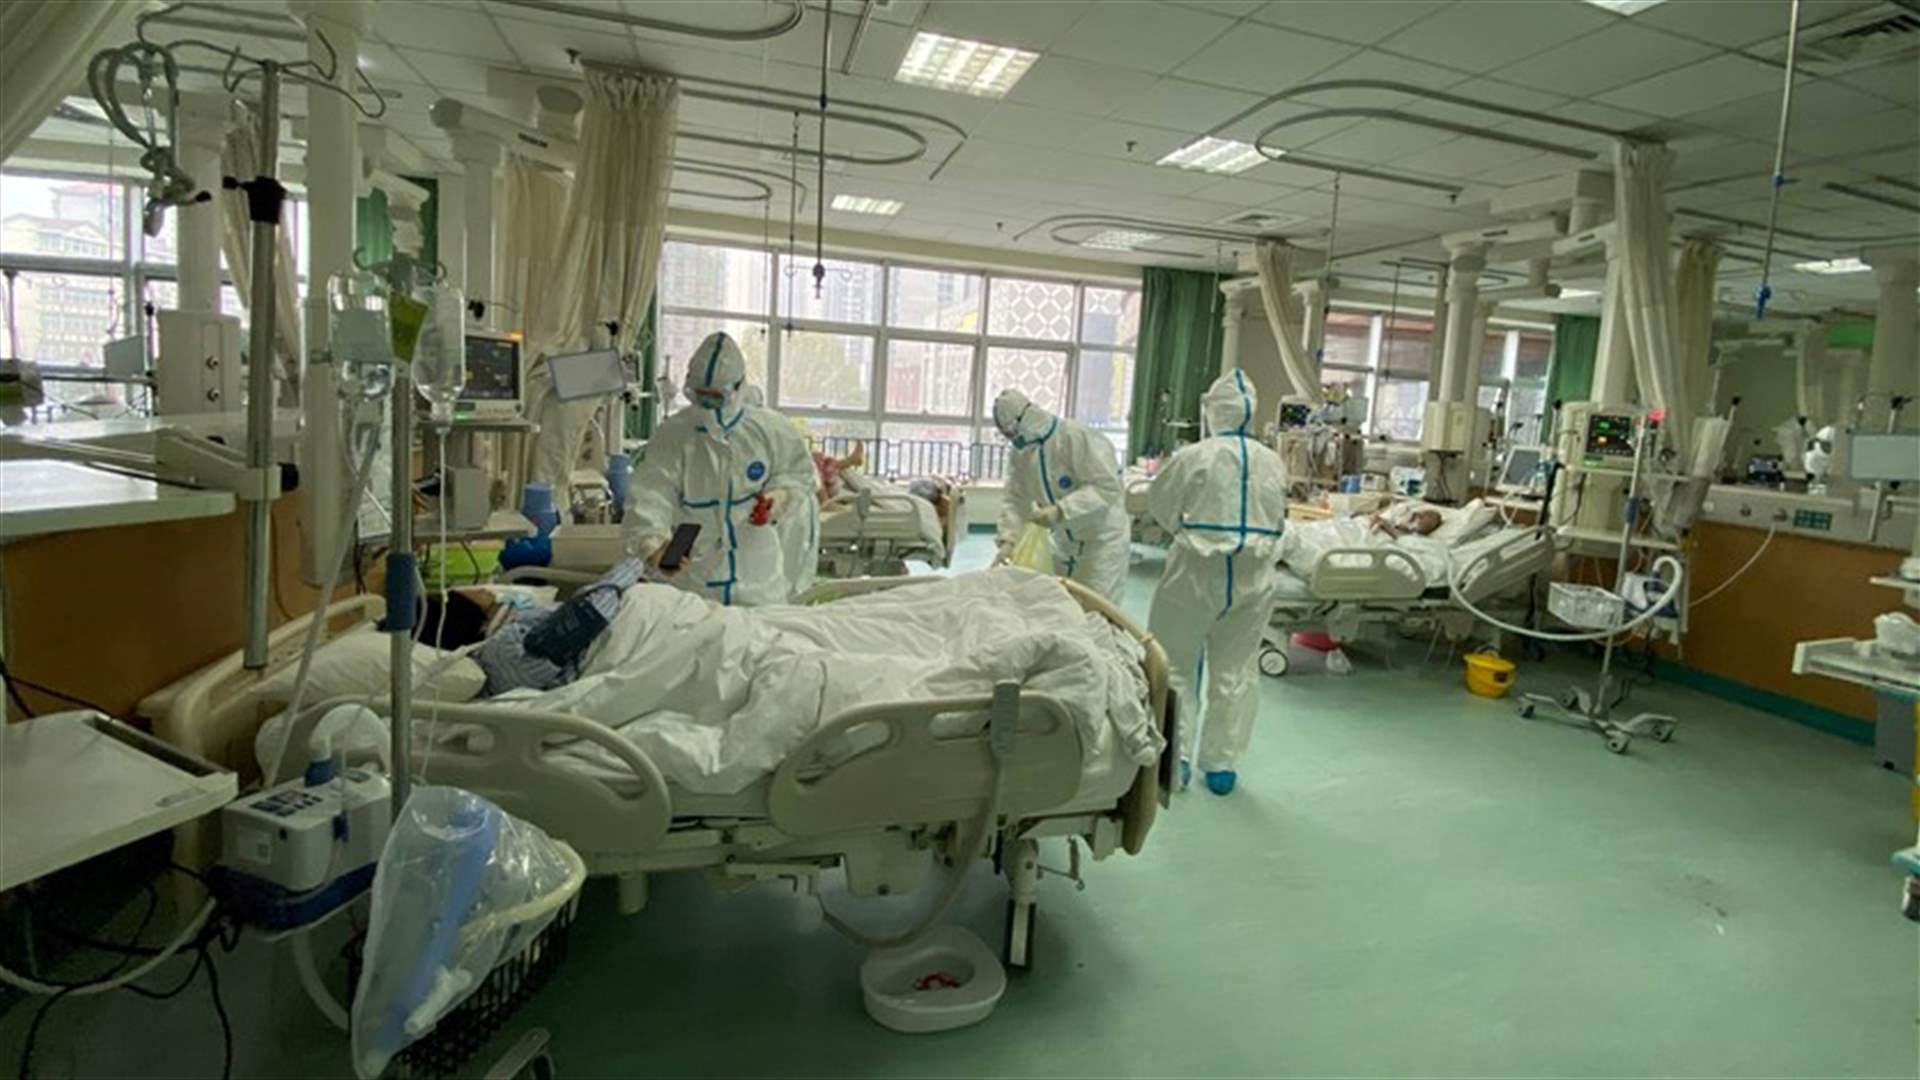 الصحة الروسية: تسجيل 7 حالات مصابة بفيروس كورونا بمناطق صينية متاخمة لروسيا